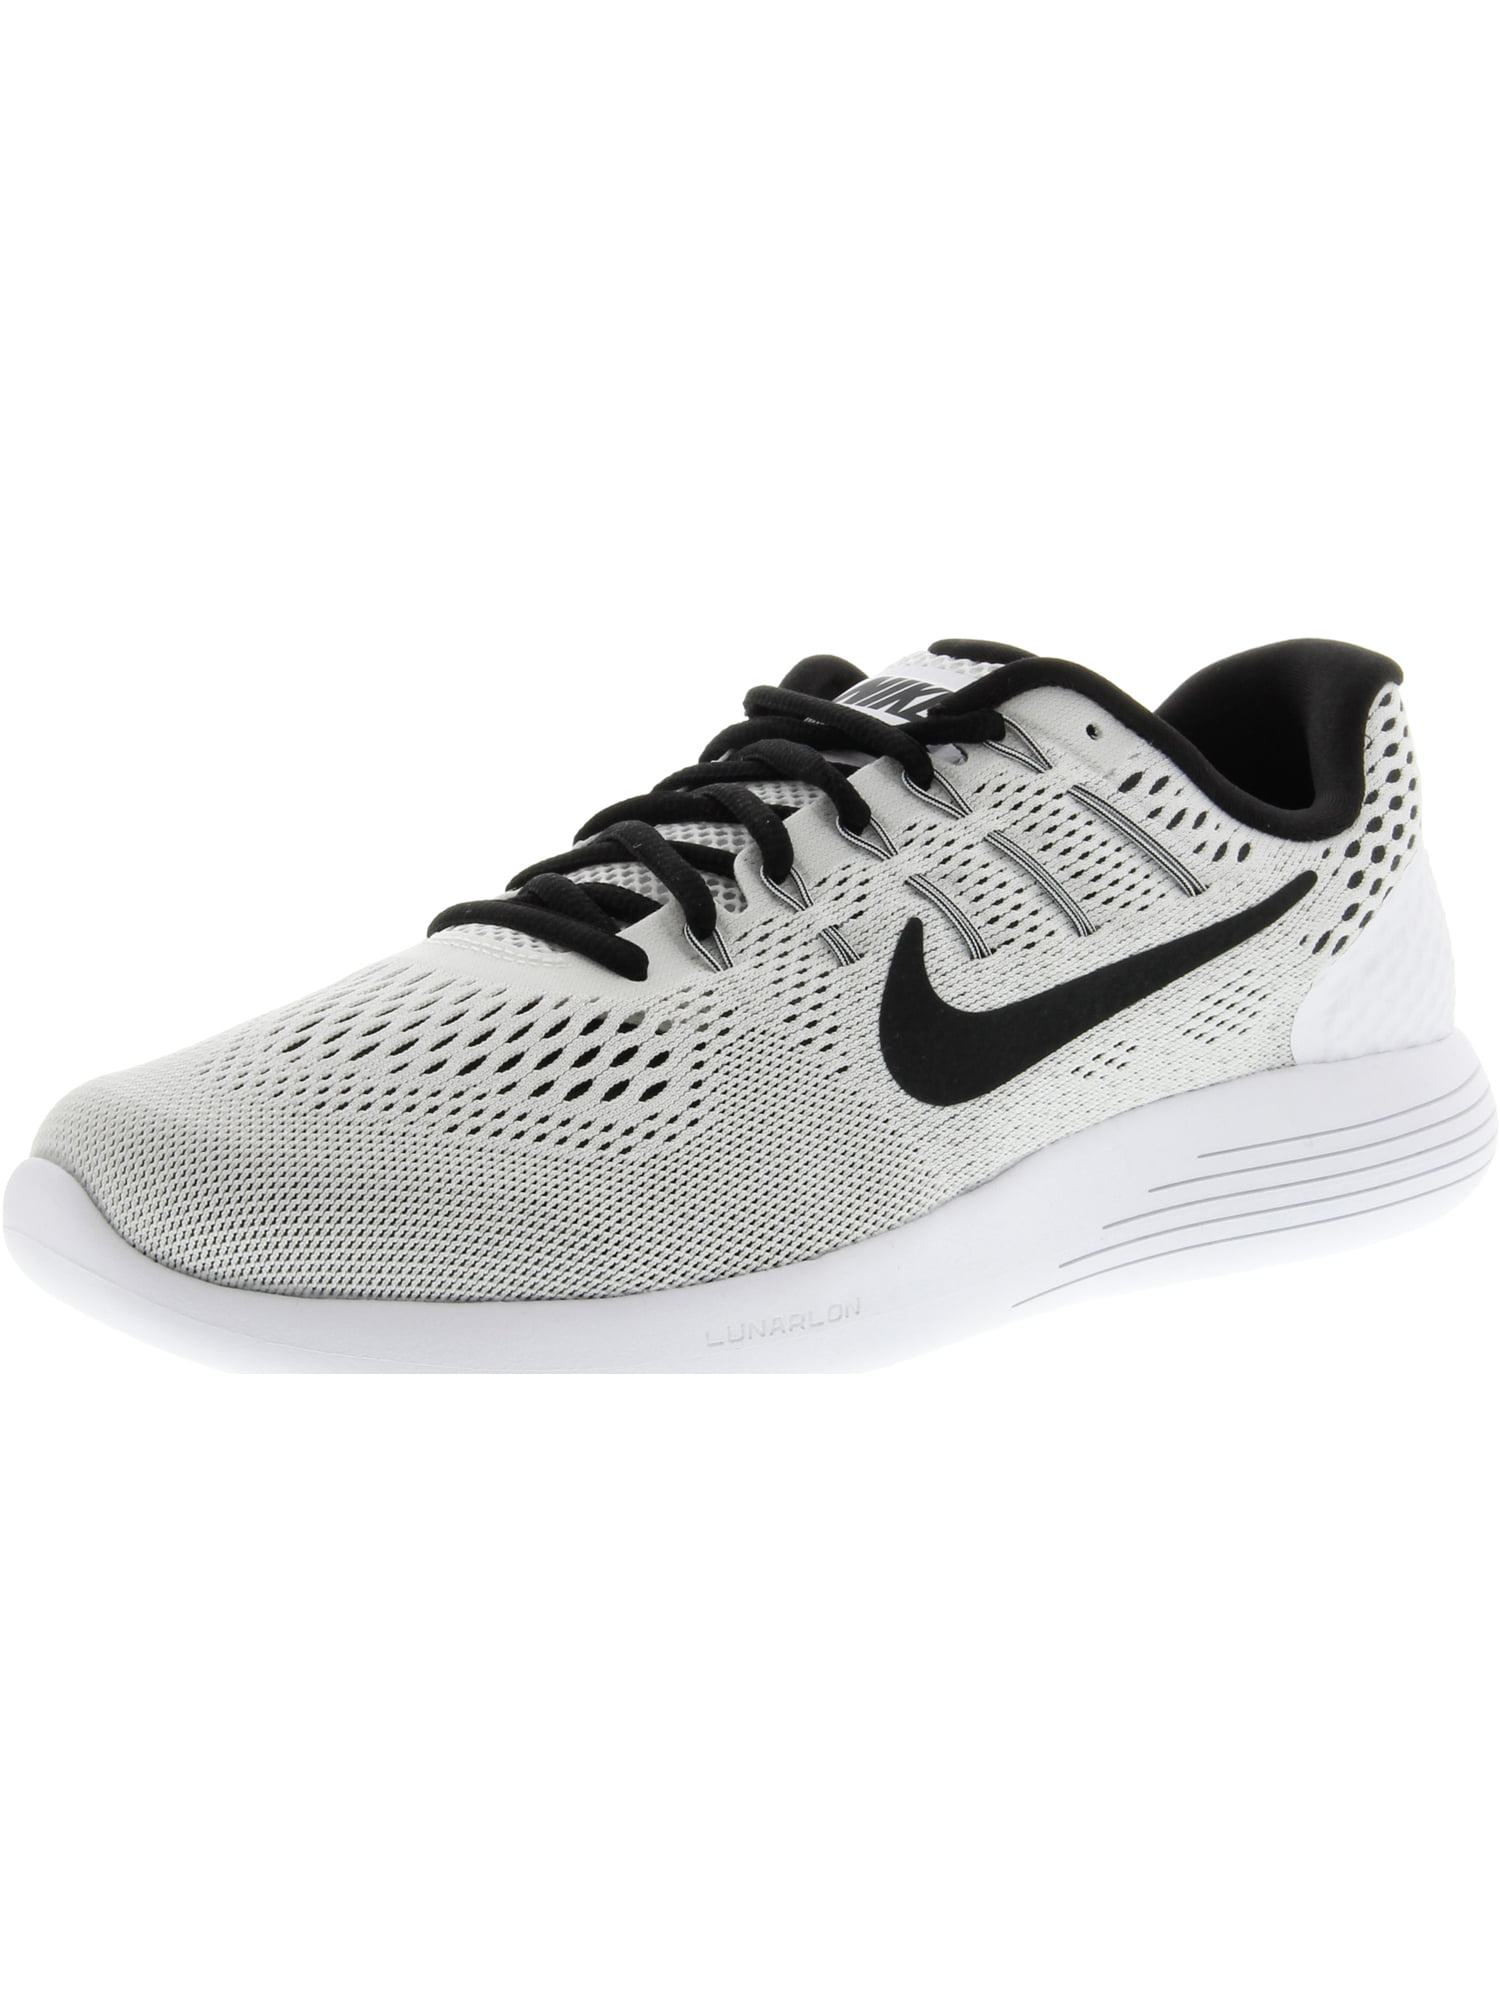 Nike Men's 8 White / Black Ankle-High Running - 10.5M - Walmart.com